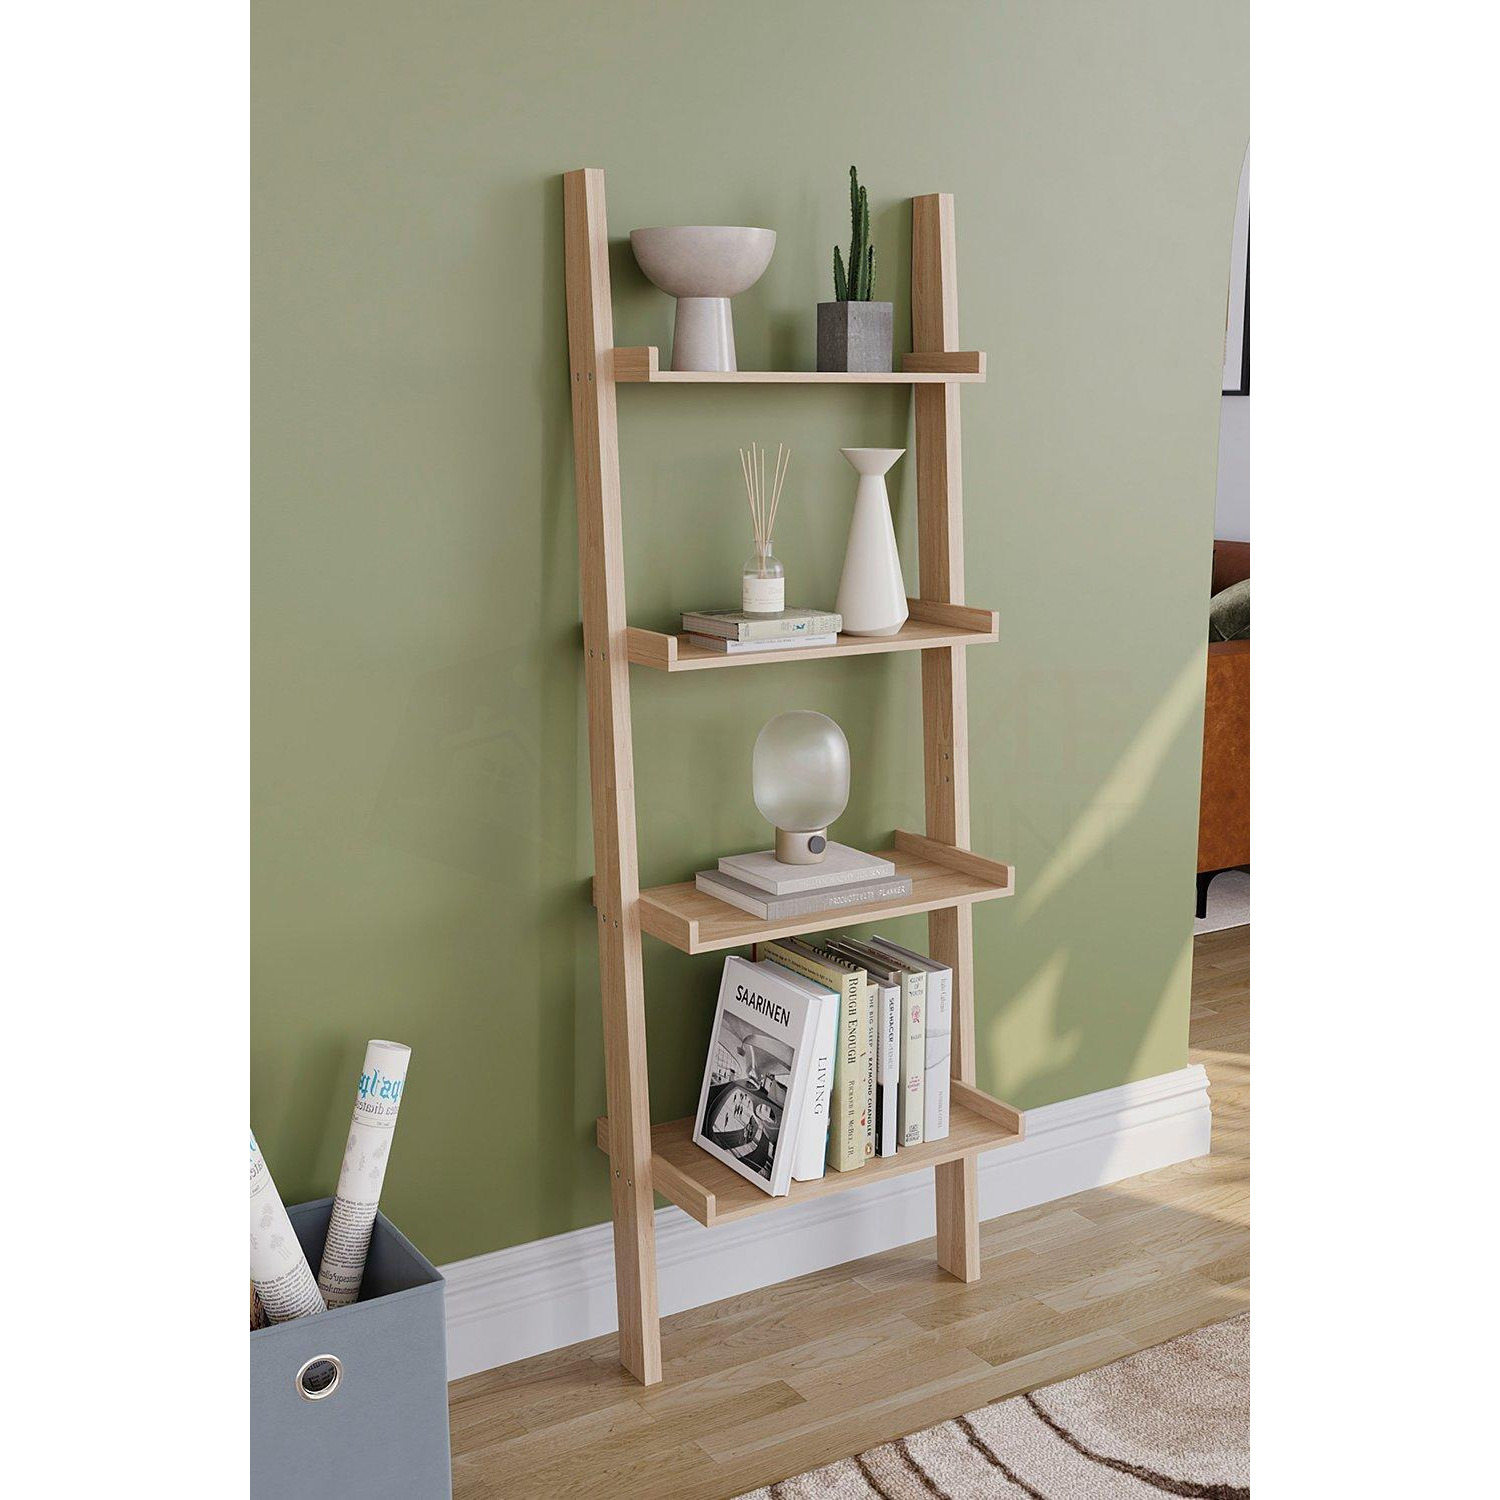 Vida Designs York 4 Tier Ladder Bookcase Storage 1540 x 560 x 290 mm - image 1